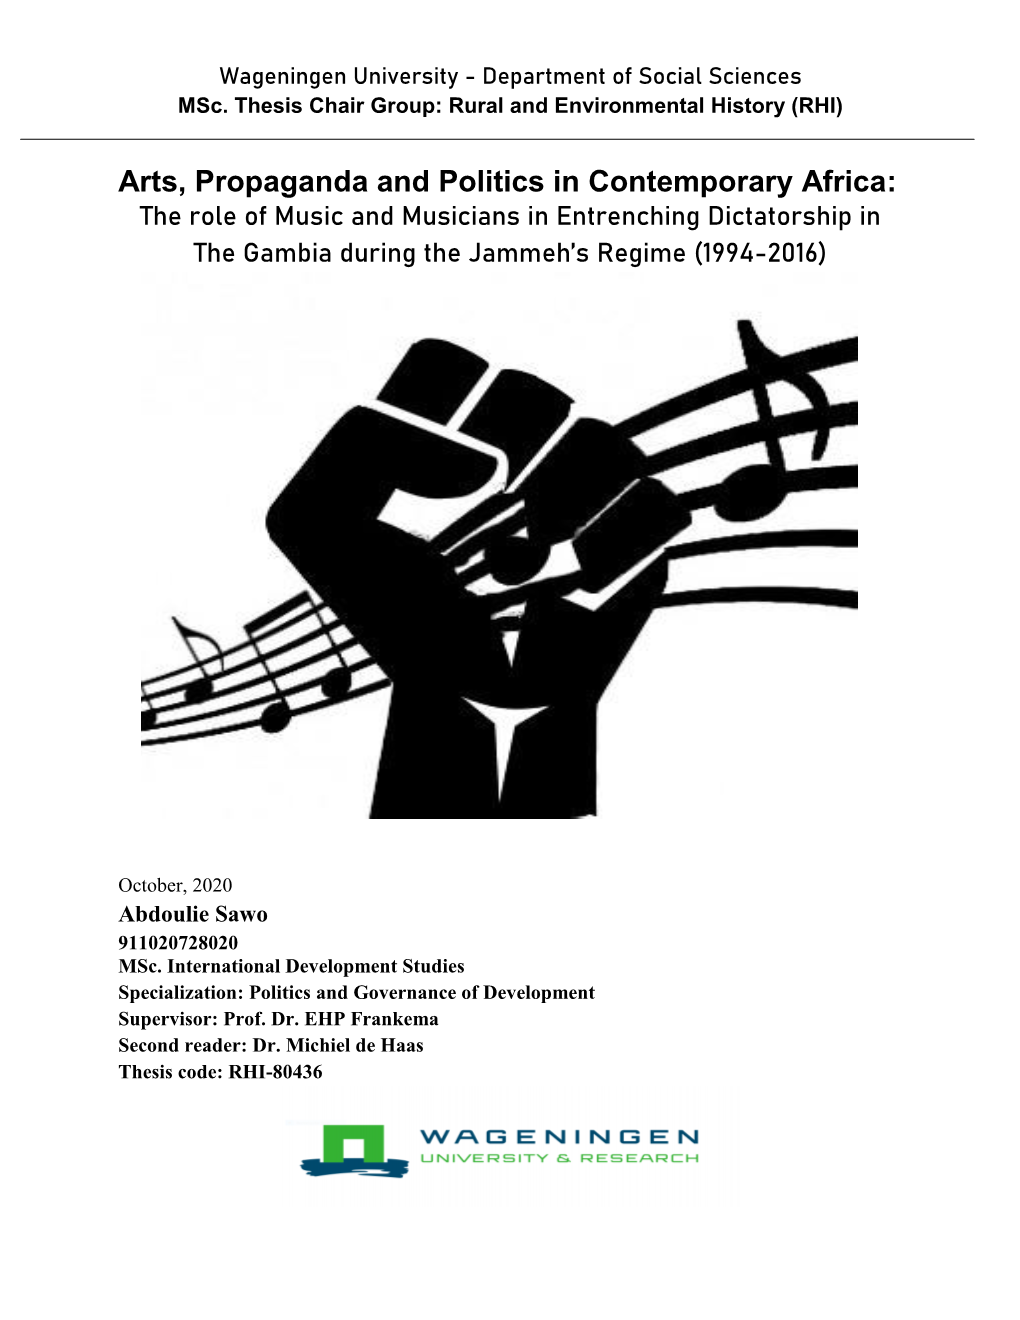 Arts, Propaganda and Politics in Contemporary Africa